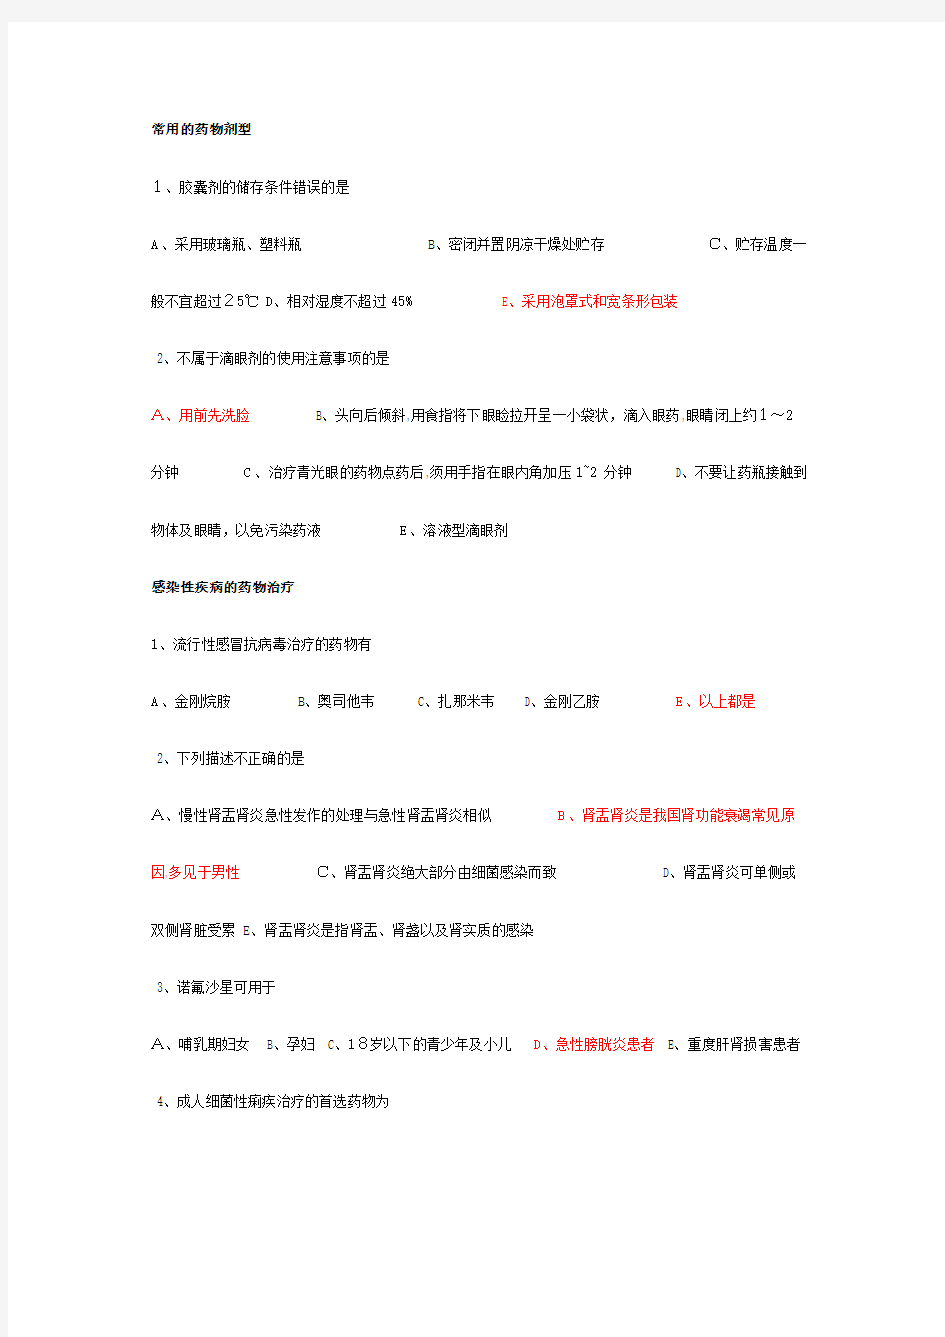 广西2013年华医网培训我的作业题目与标准答案(二)